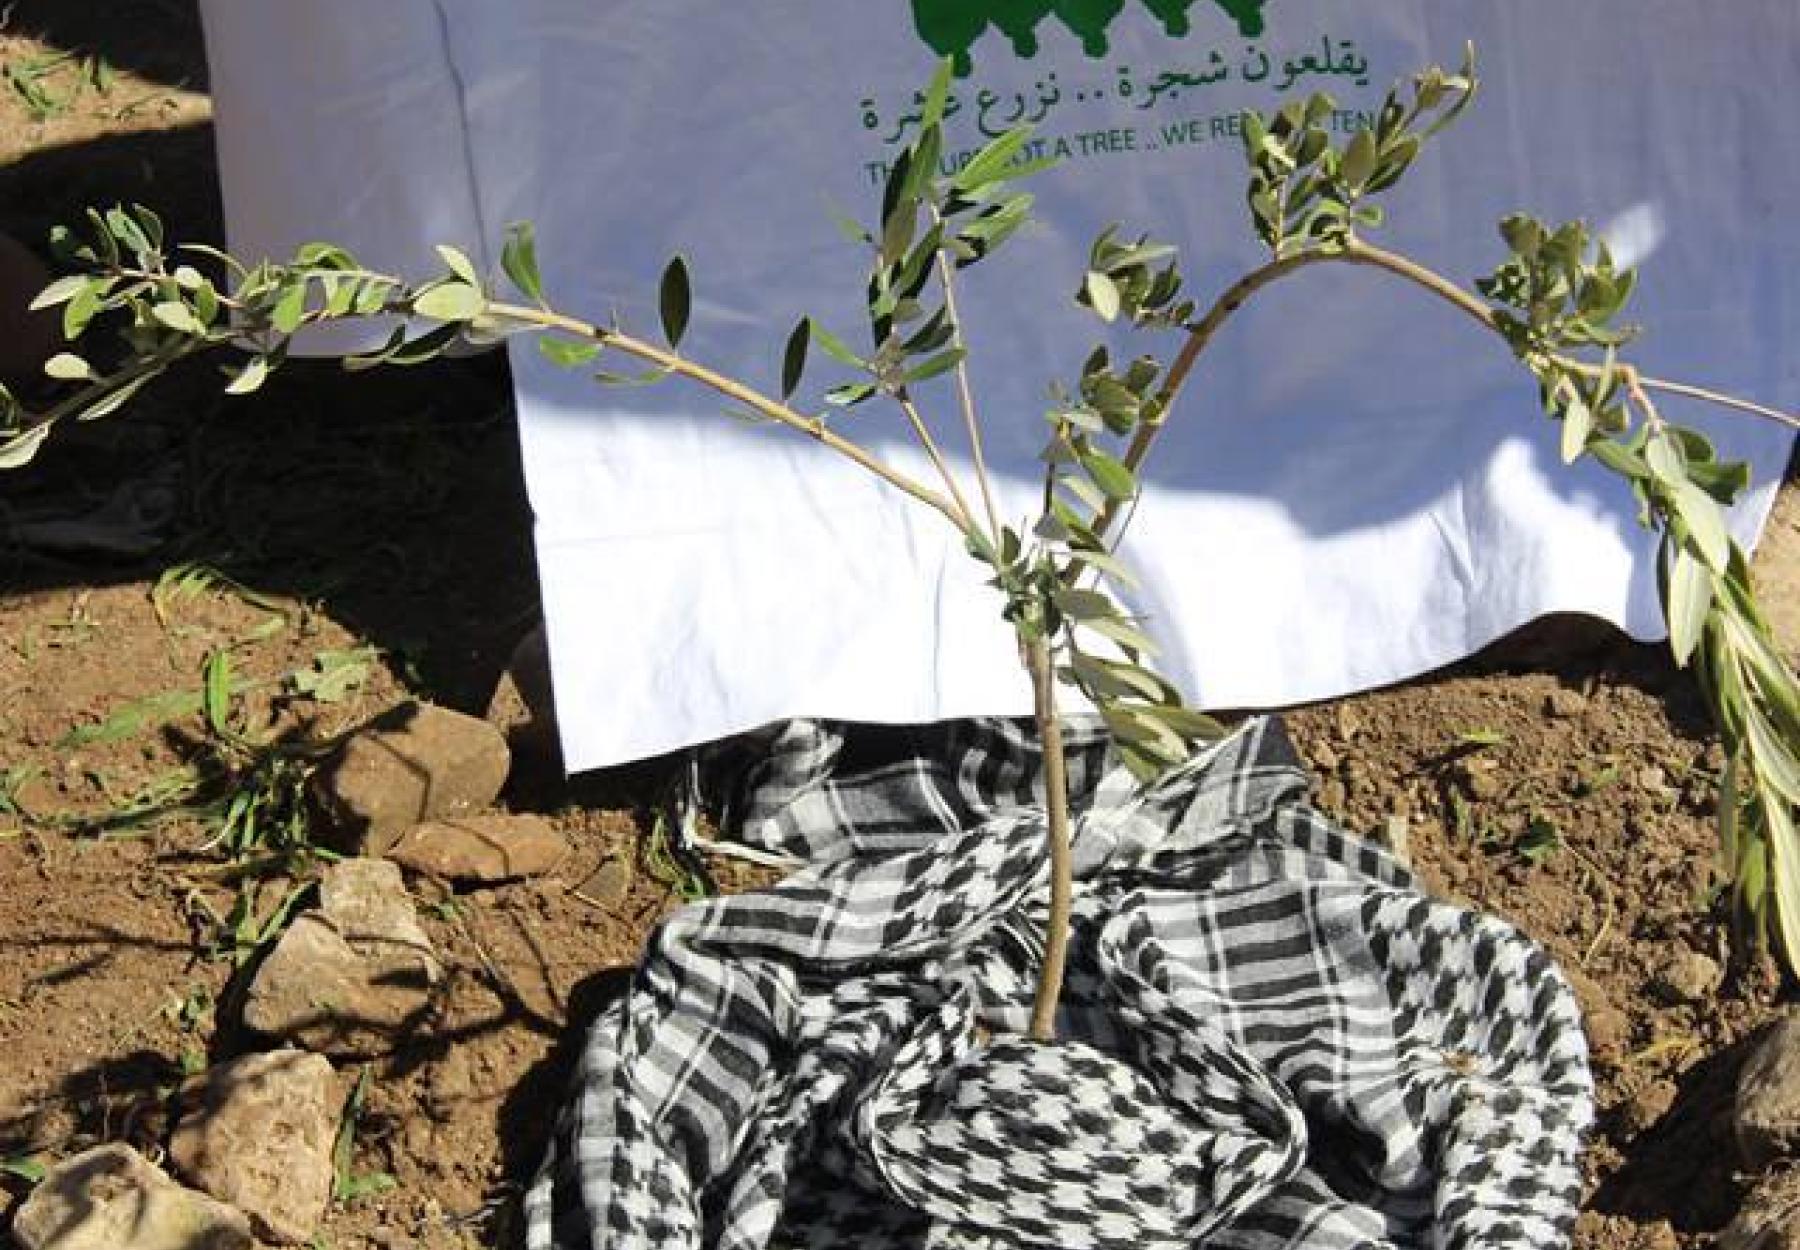 المليون شجرة يطلق حملة "الأرض لنا" لزراعة آلاف الأشجار في كافة محافظات فلسطين